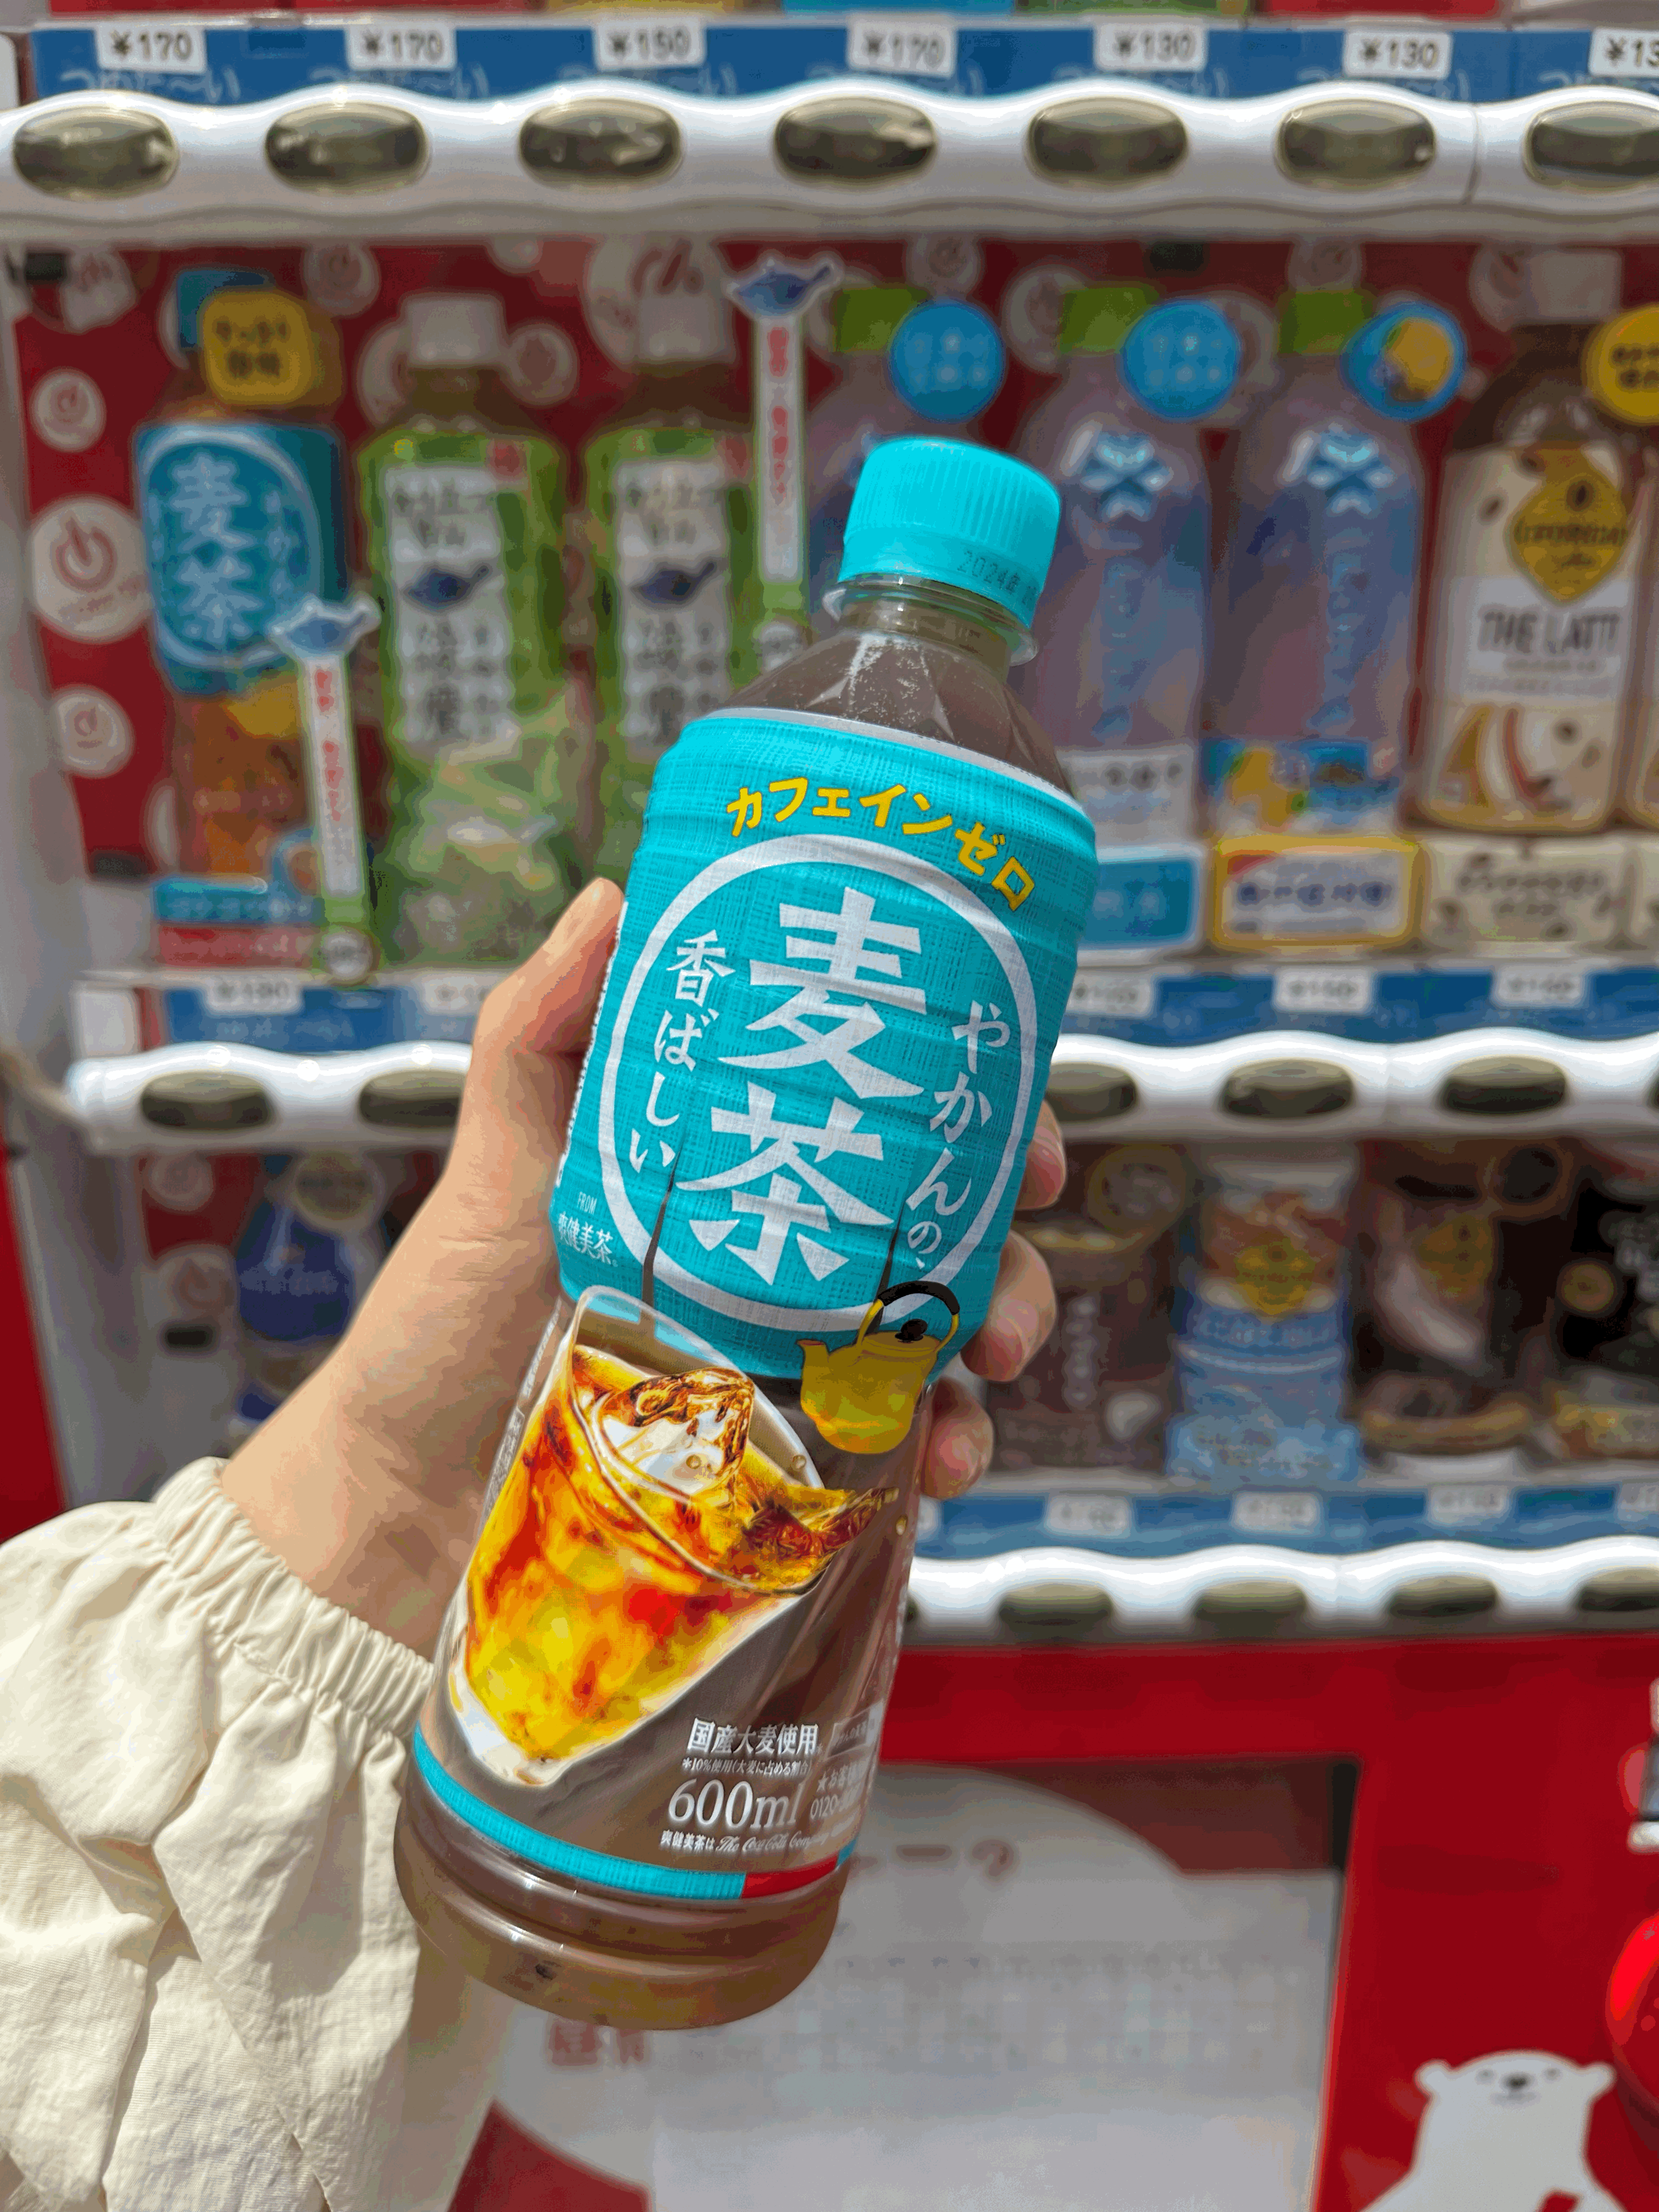 츠키지시장 자판기 보리차 일본도쿄여행